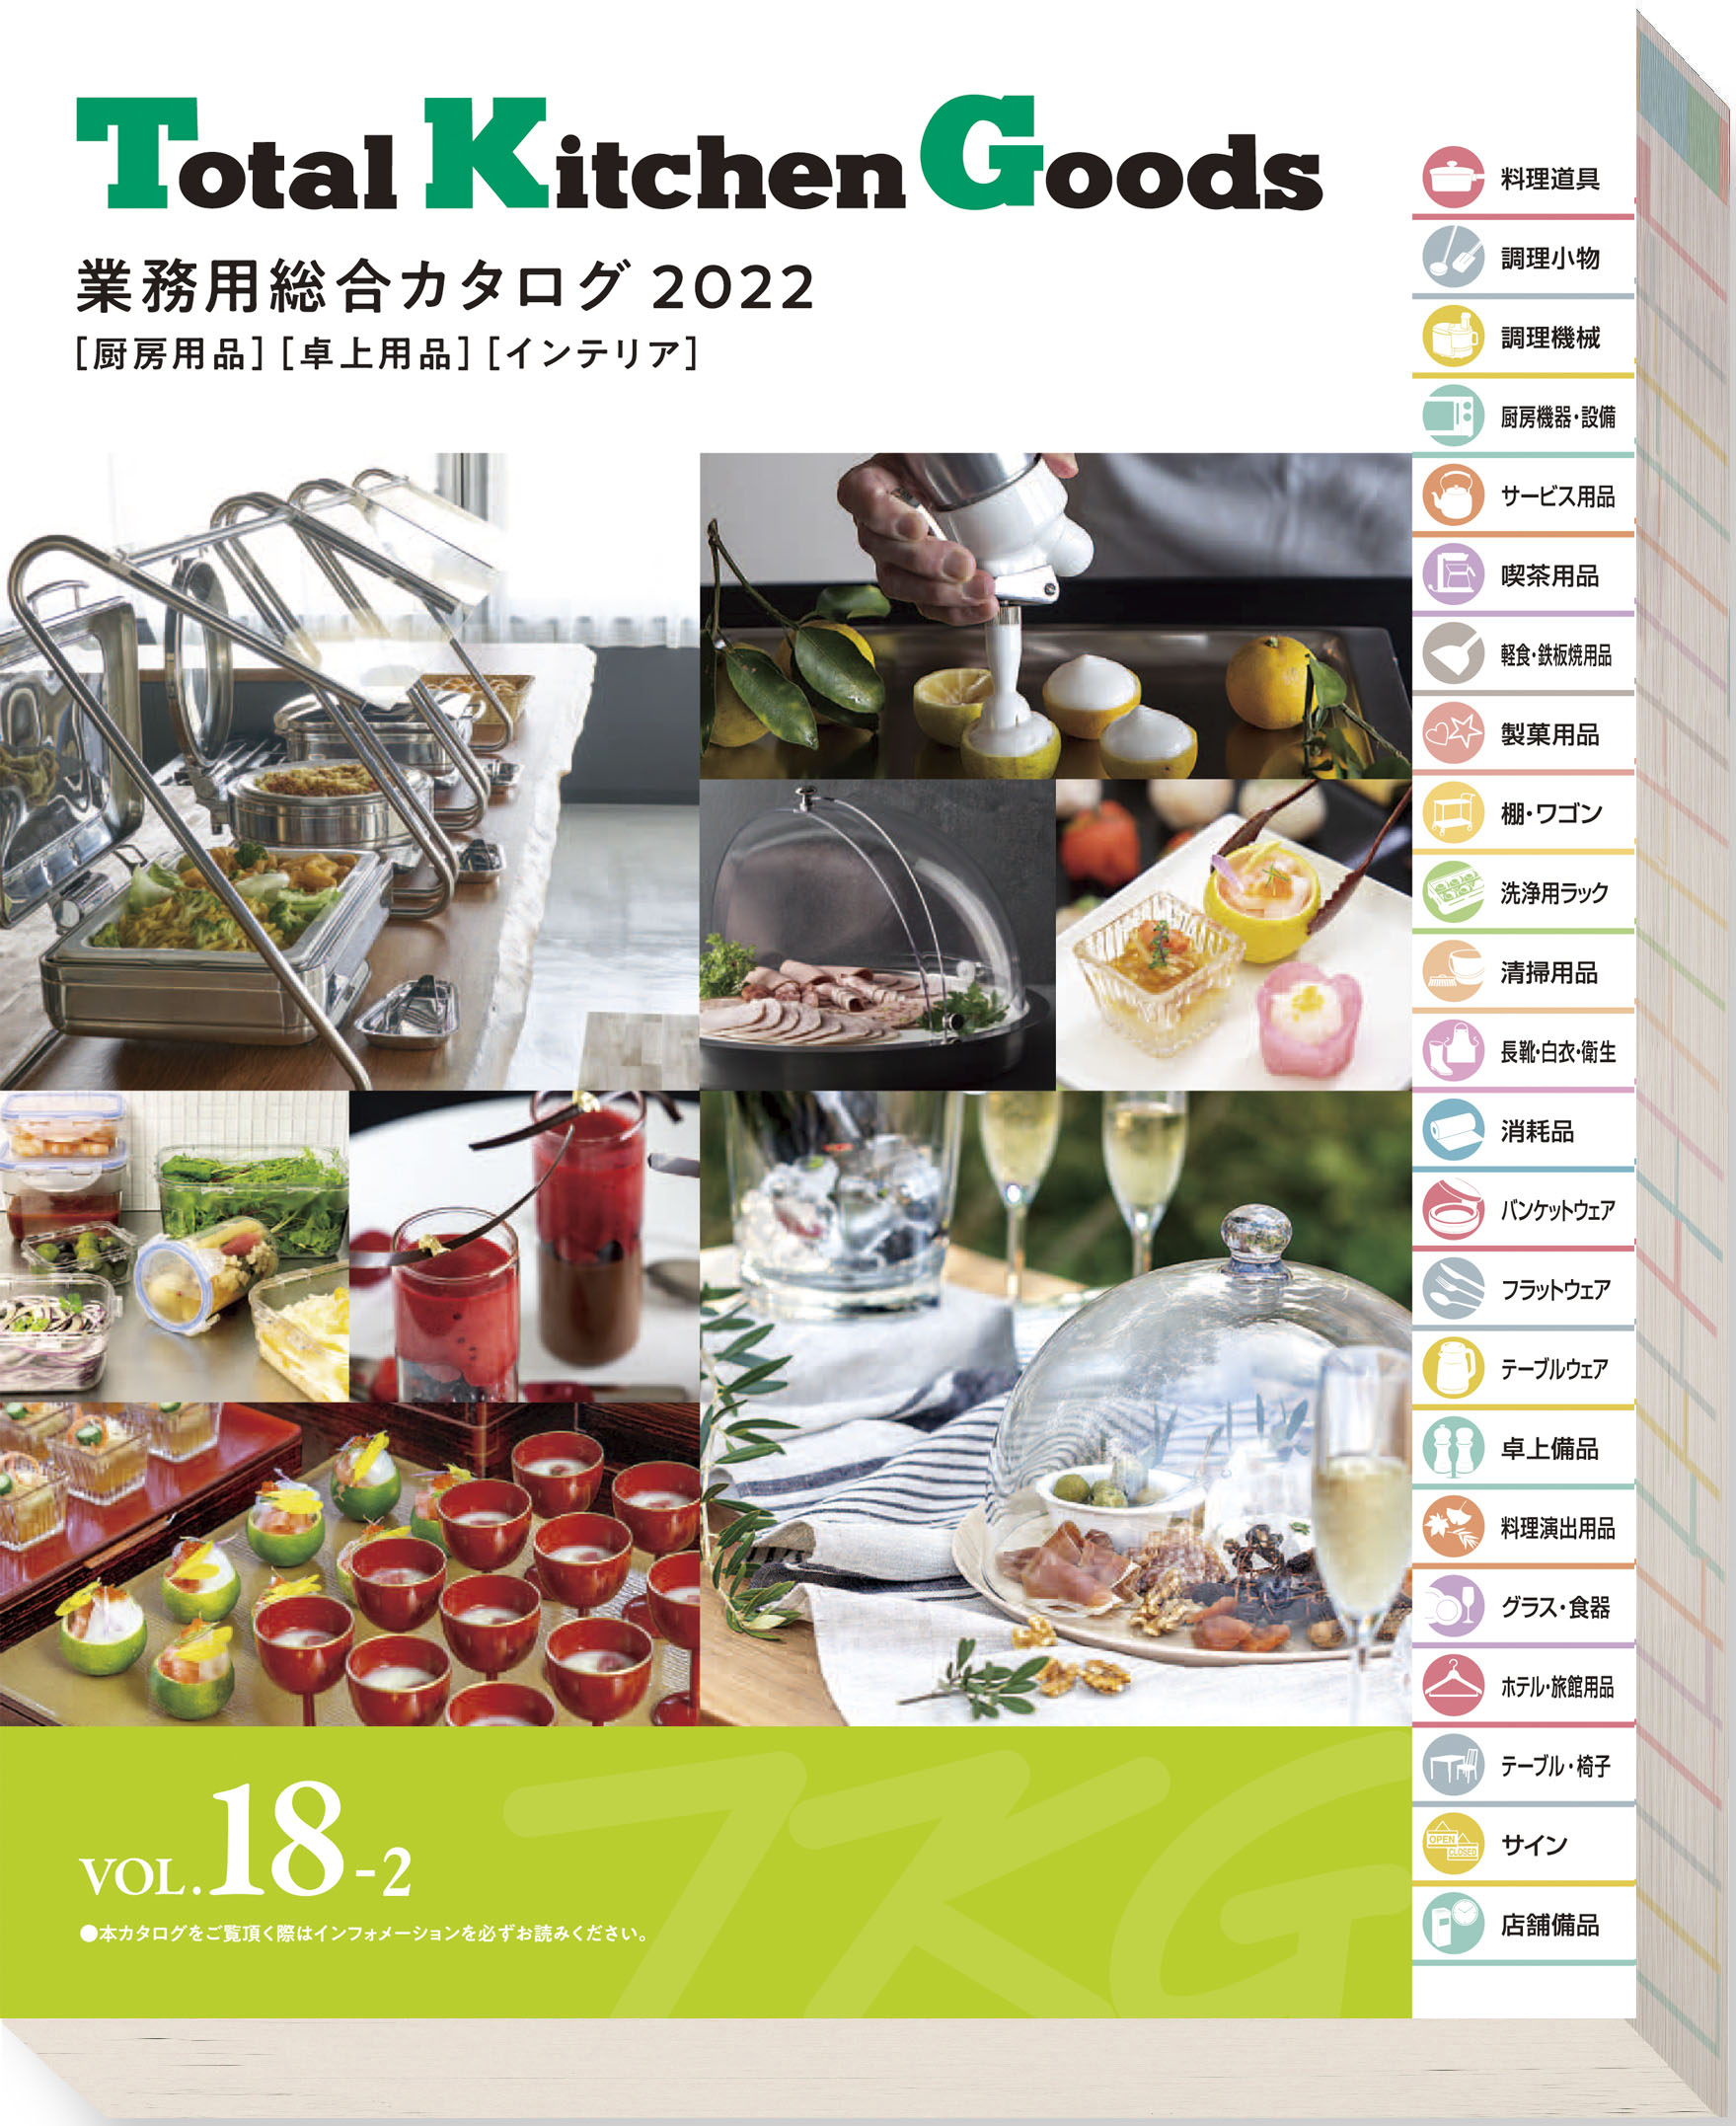 カタログ Vol.18-2 | TKG 遠藤商事株式会社